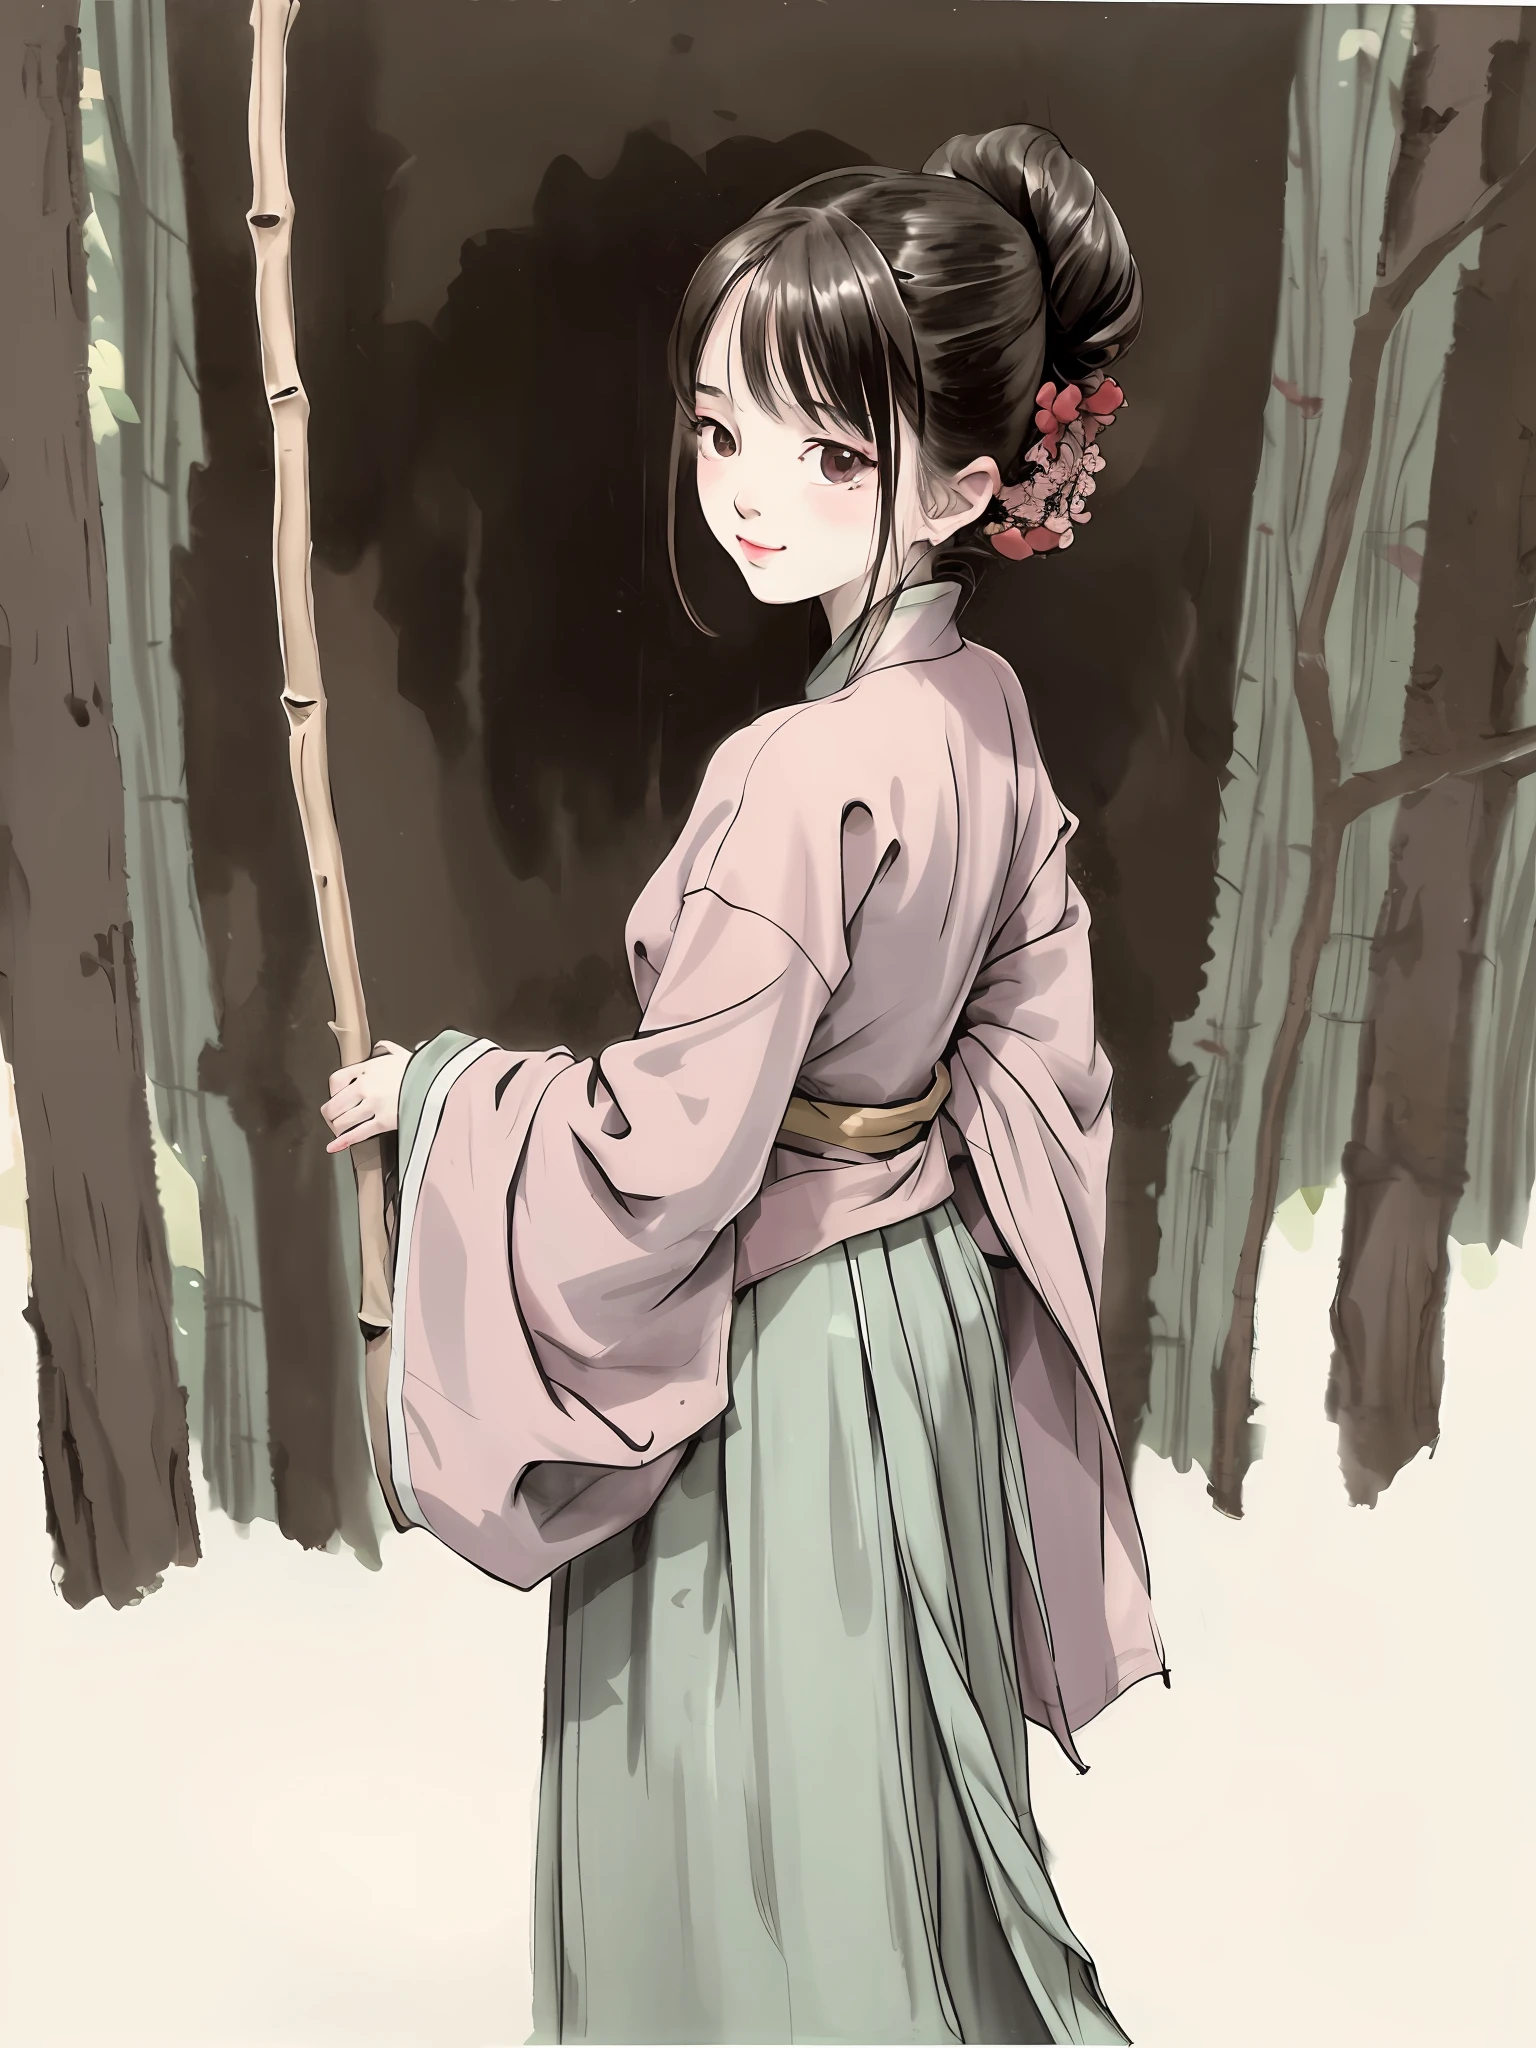 (Obra de arte, melhor qualidade: 1.2), pintura a tinta tradicional chinesa, 1 mulher, de pé, Olhando para trás, hanfu, Ramo de salgueiro, (sorridente), olhando para o espectador,